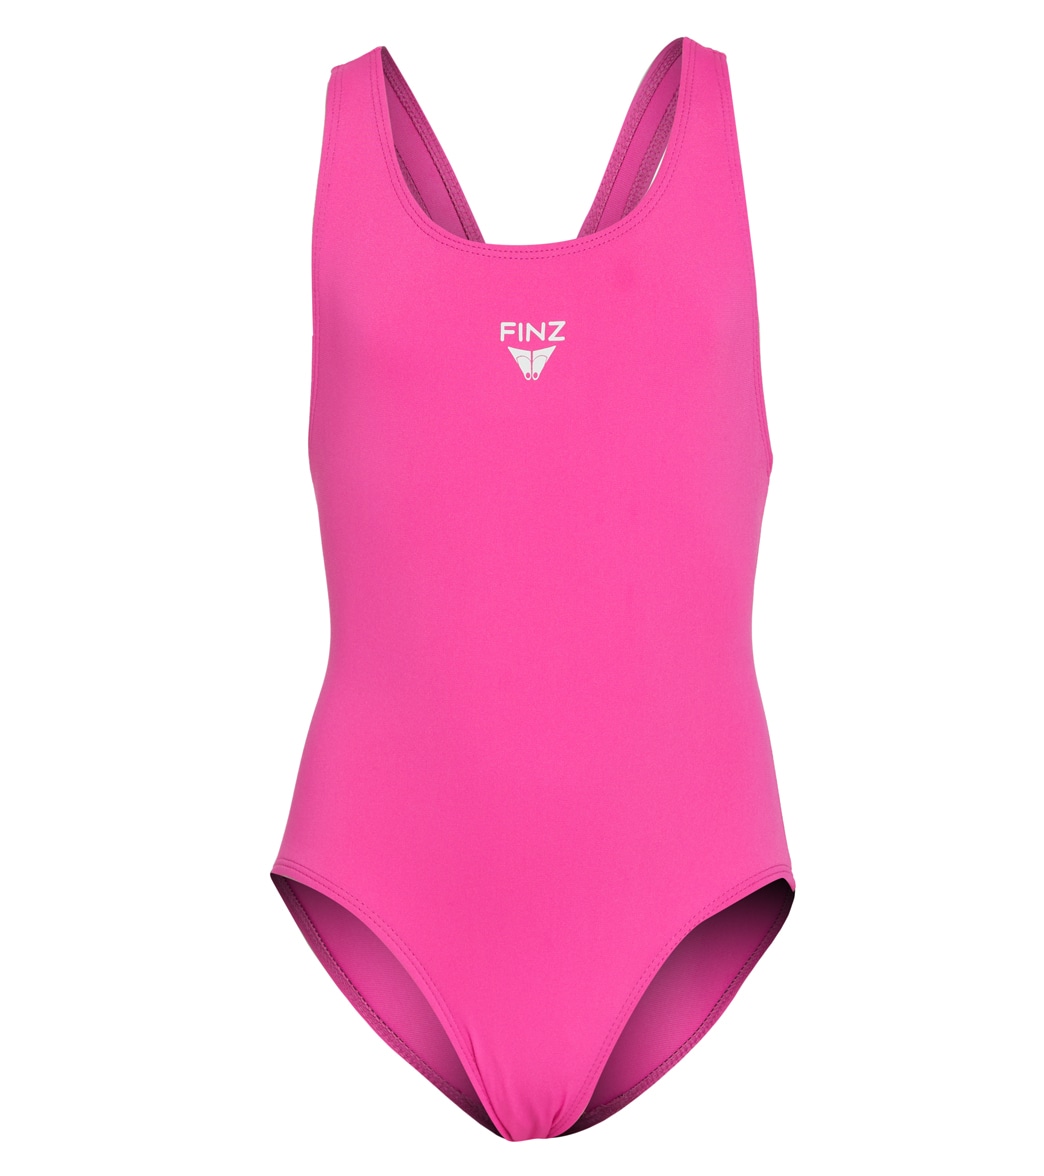 Finz Girls' Vaporback One Piece Swimsuit - Pink 10 - Swimoutlet.com